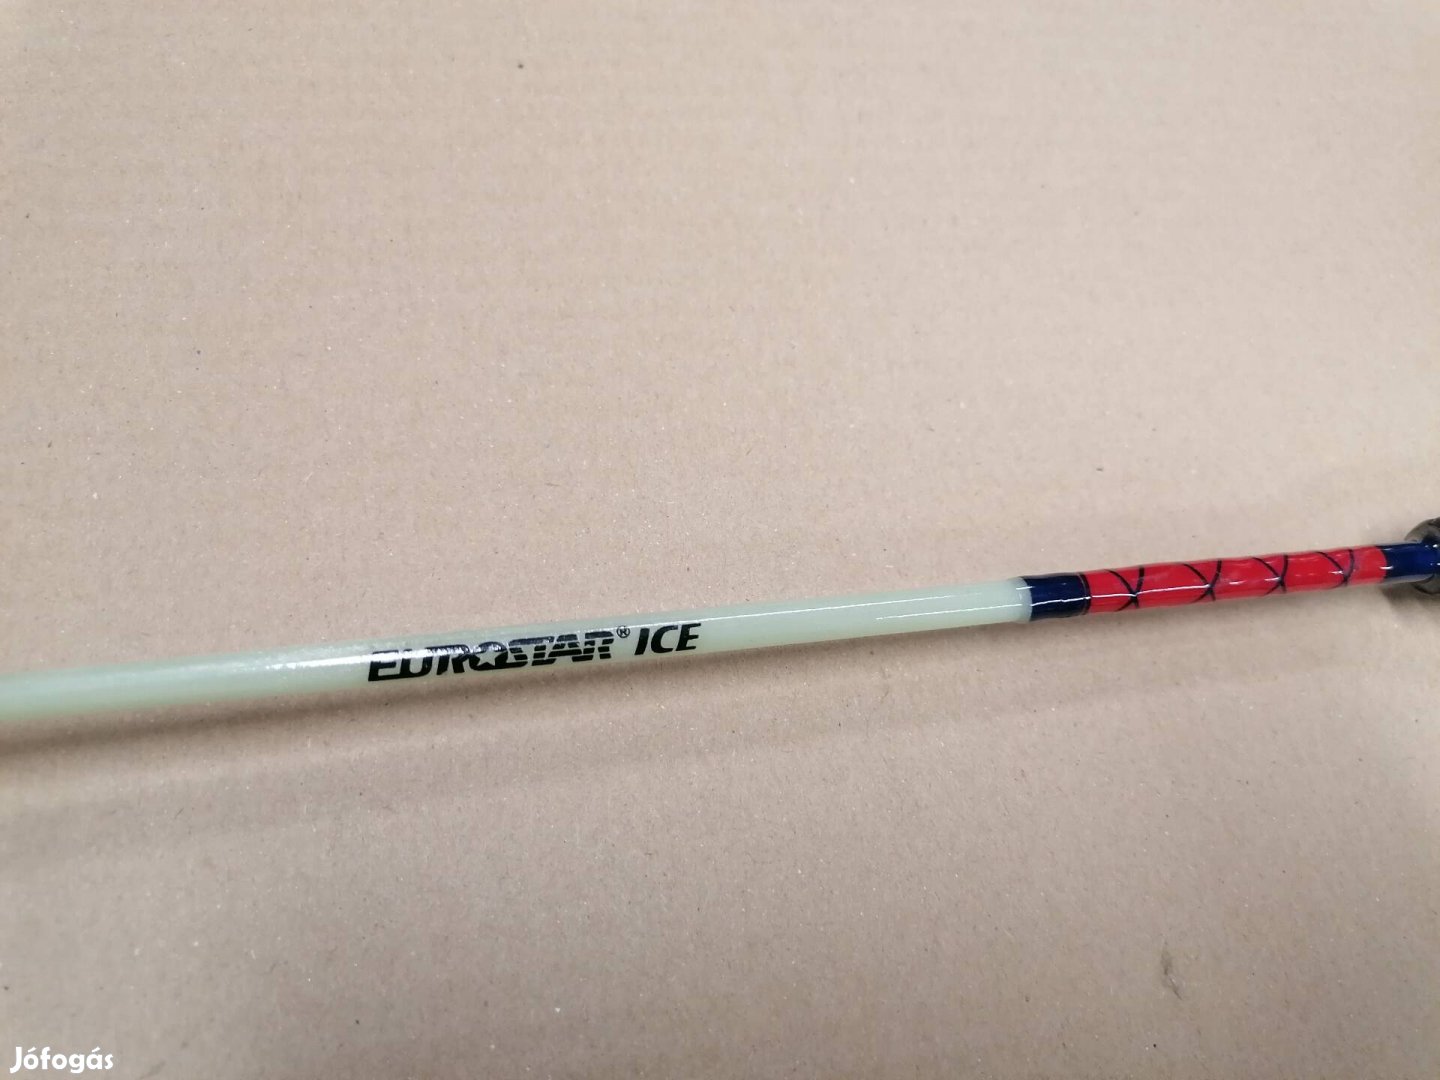 Eurostar Ice bot